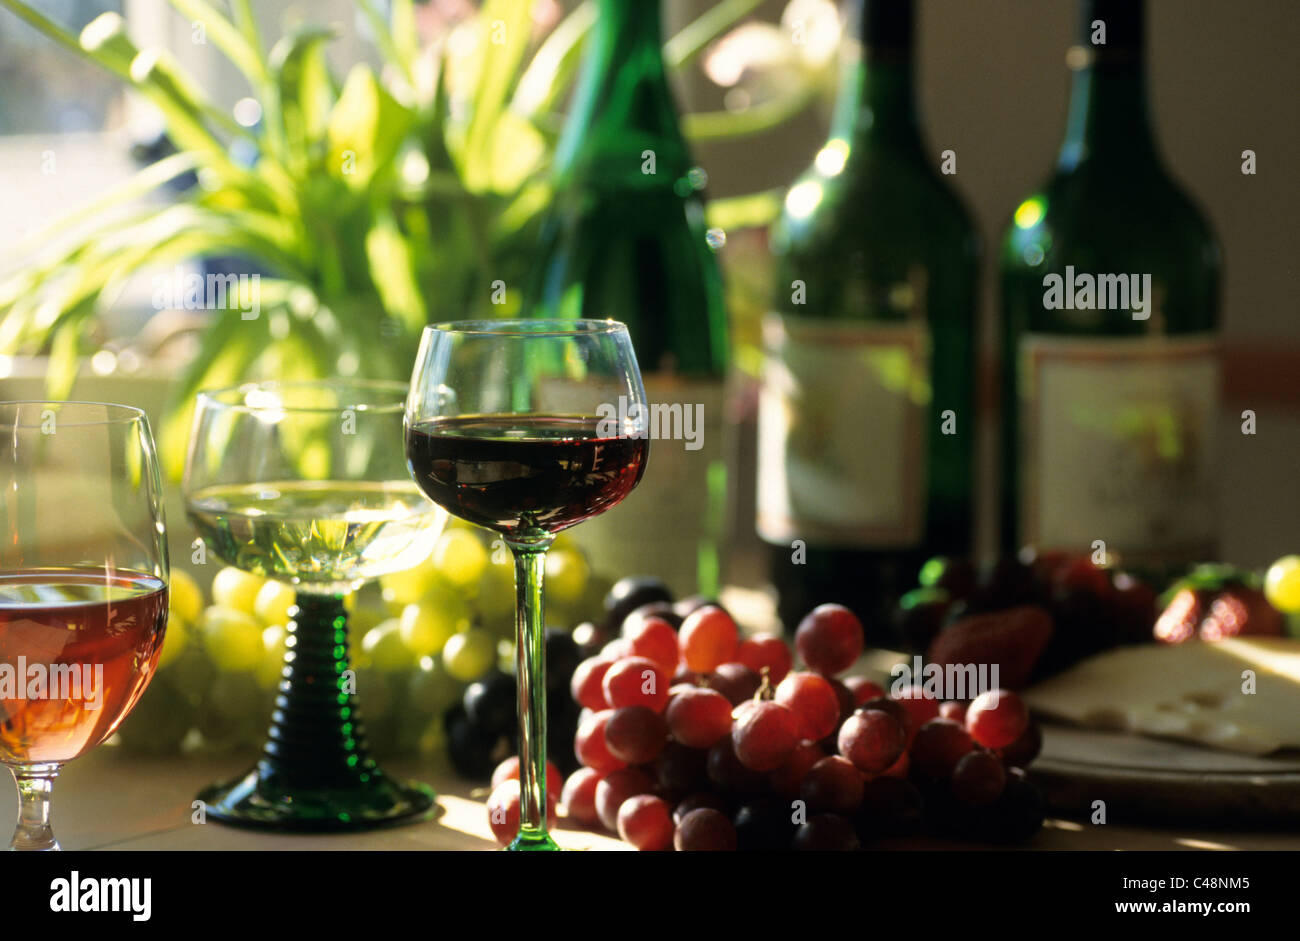 Glasses of wine Stock Photo